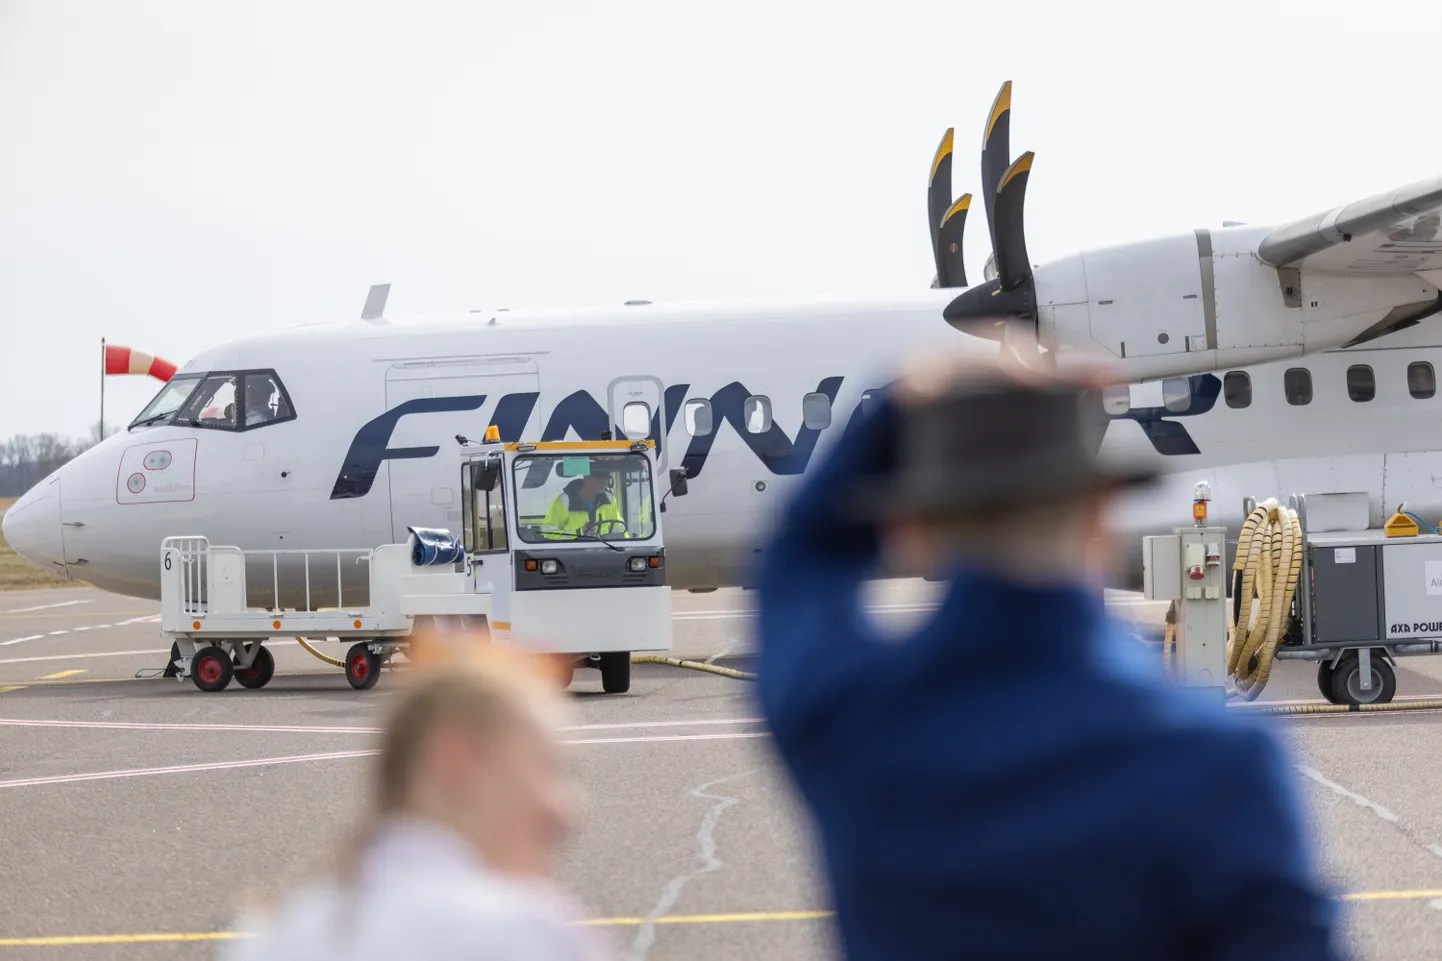 Pühapäeval, 31. märtsil alustas Finnair regulaarlendudega Tartu ja Helsingi lennujaama vahel. Aprilli lõpus pidid kaks Helsingi-Tartu lendu Soome tagasi pöörduma.